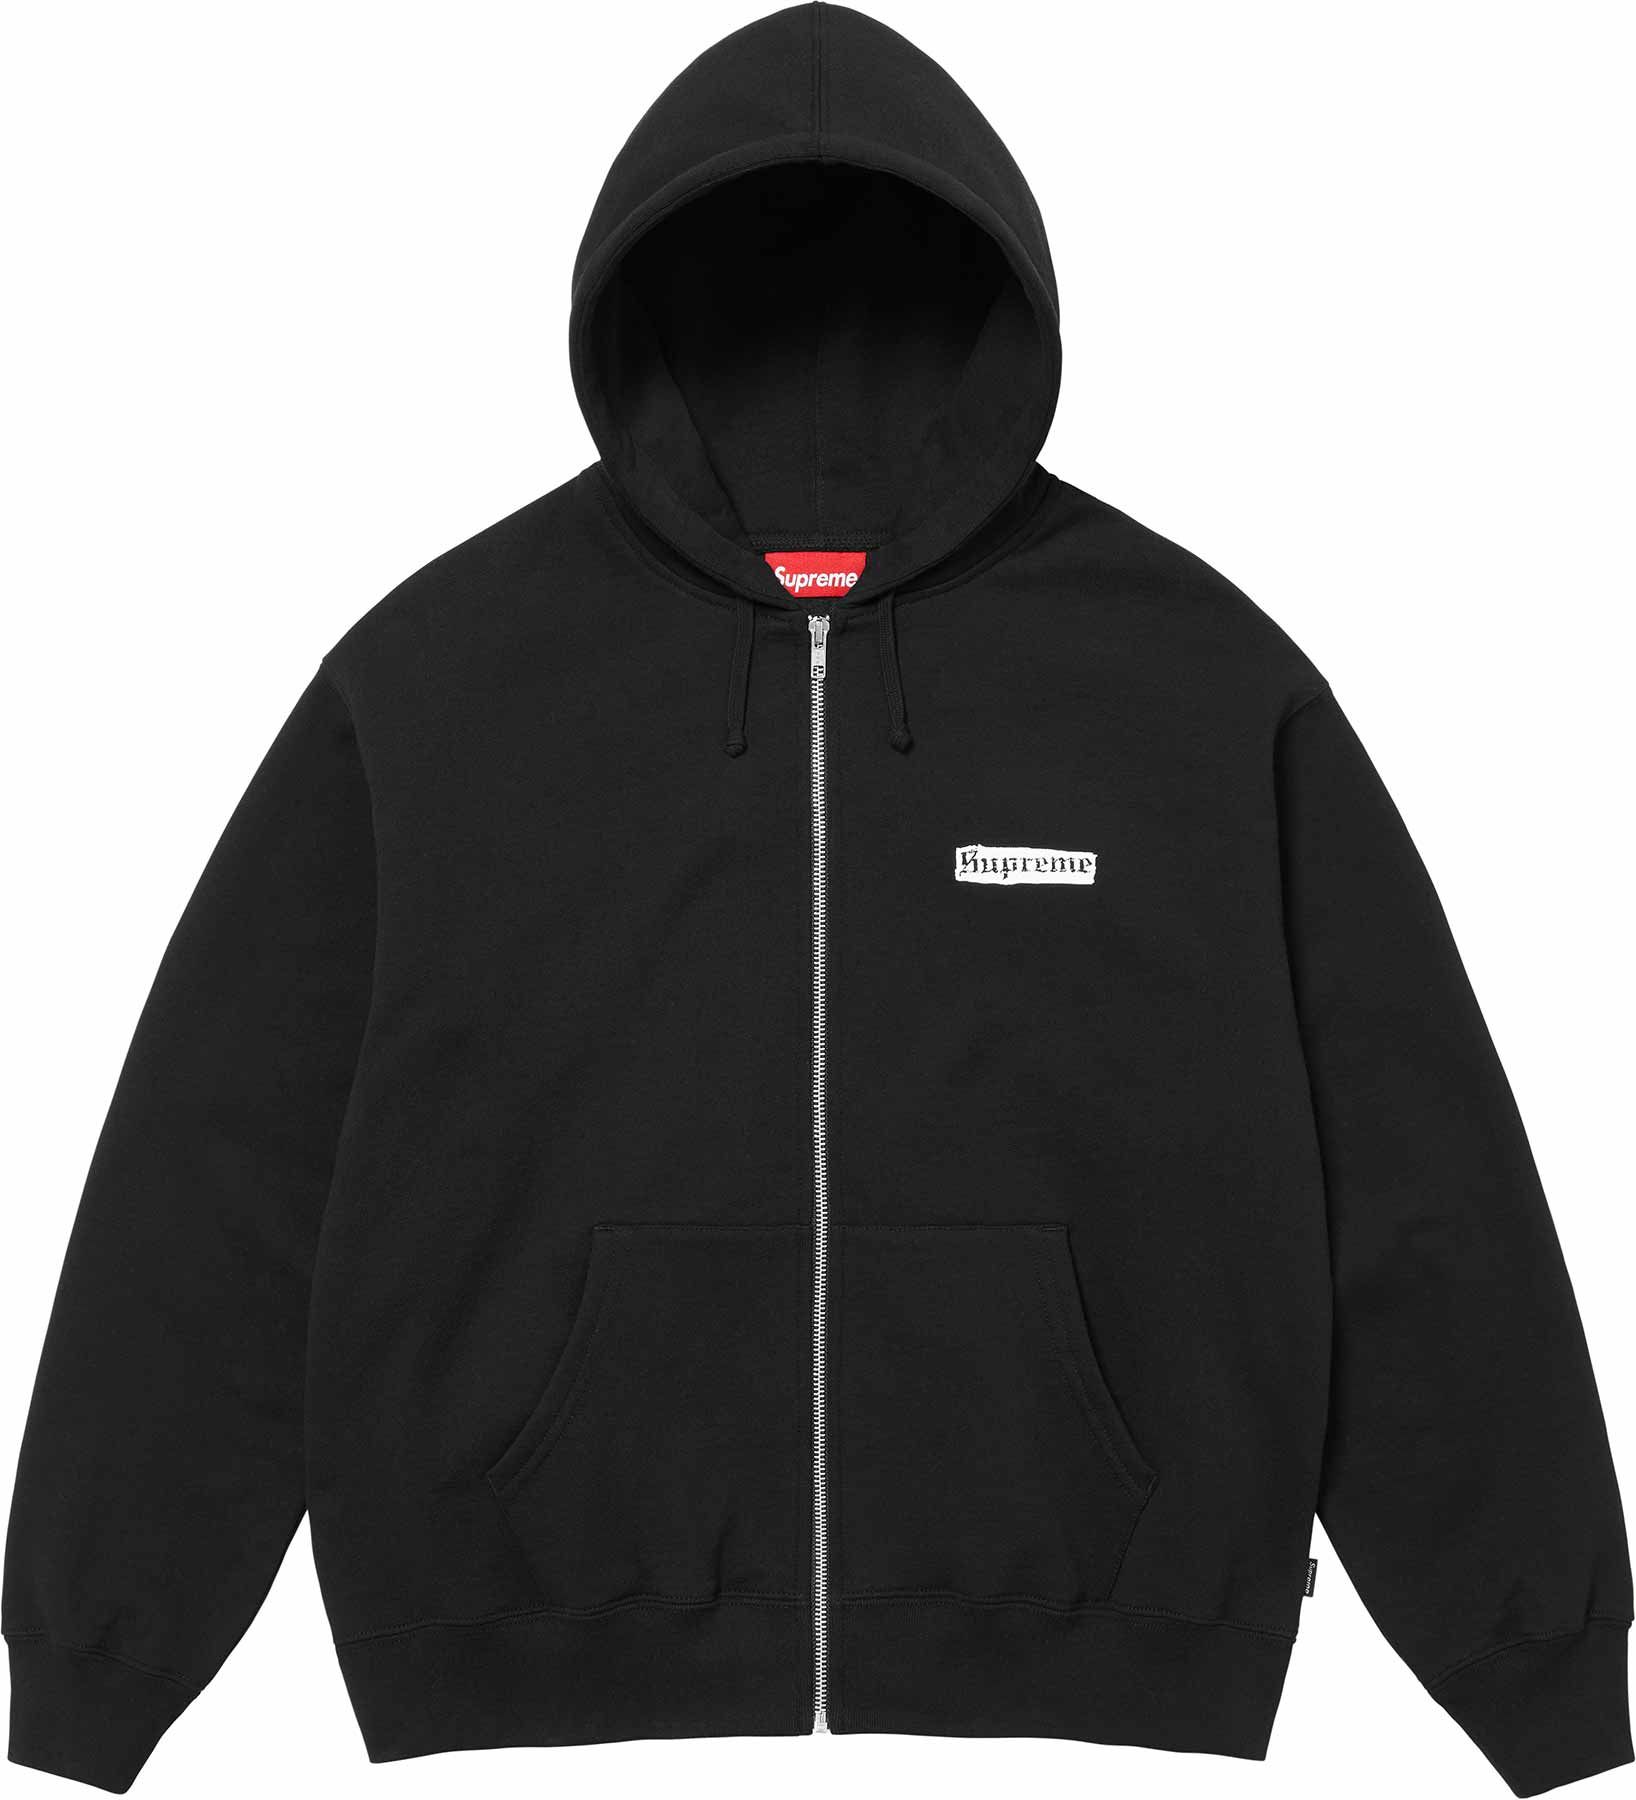 Spread Zip Up Hooded Sweatshirt – Supreme